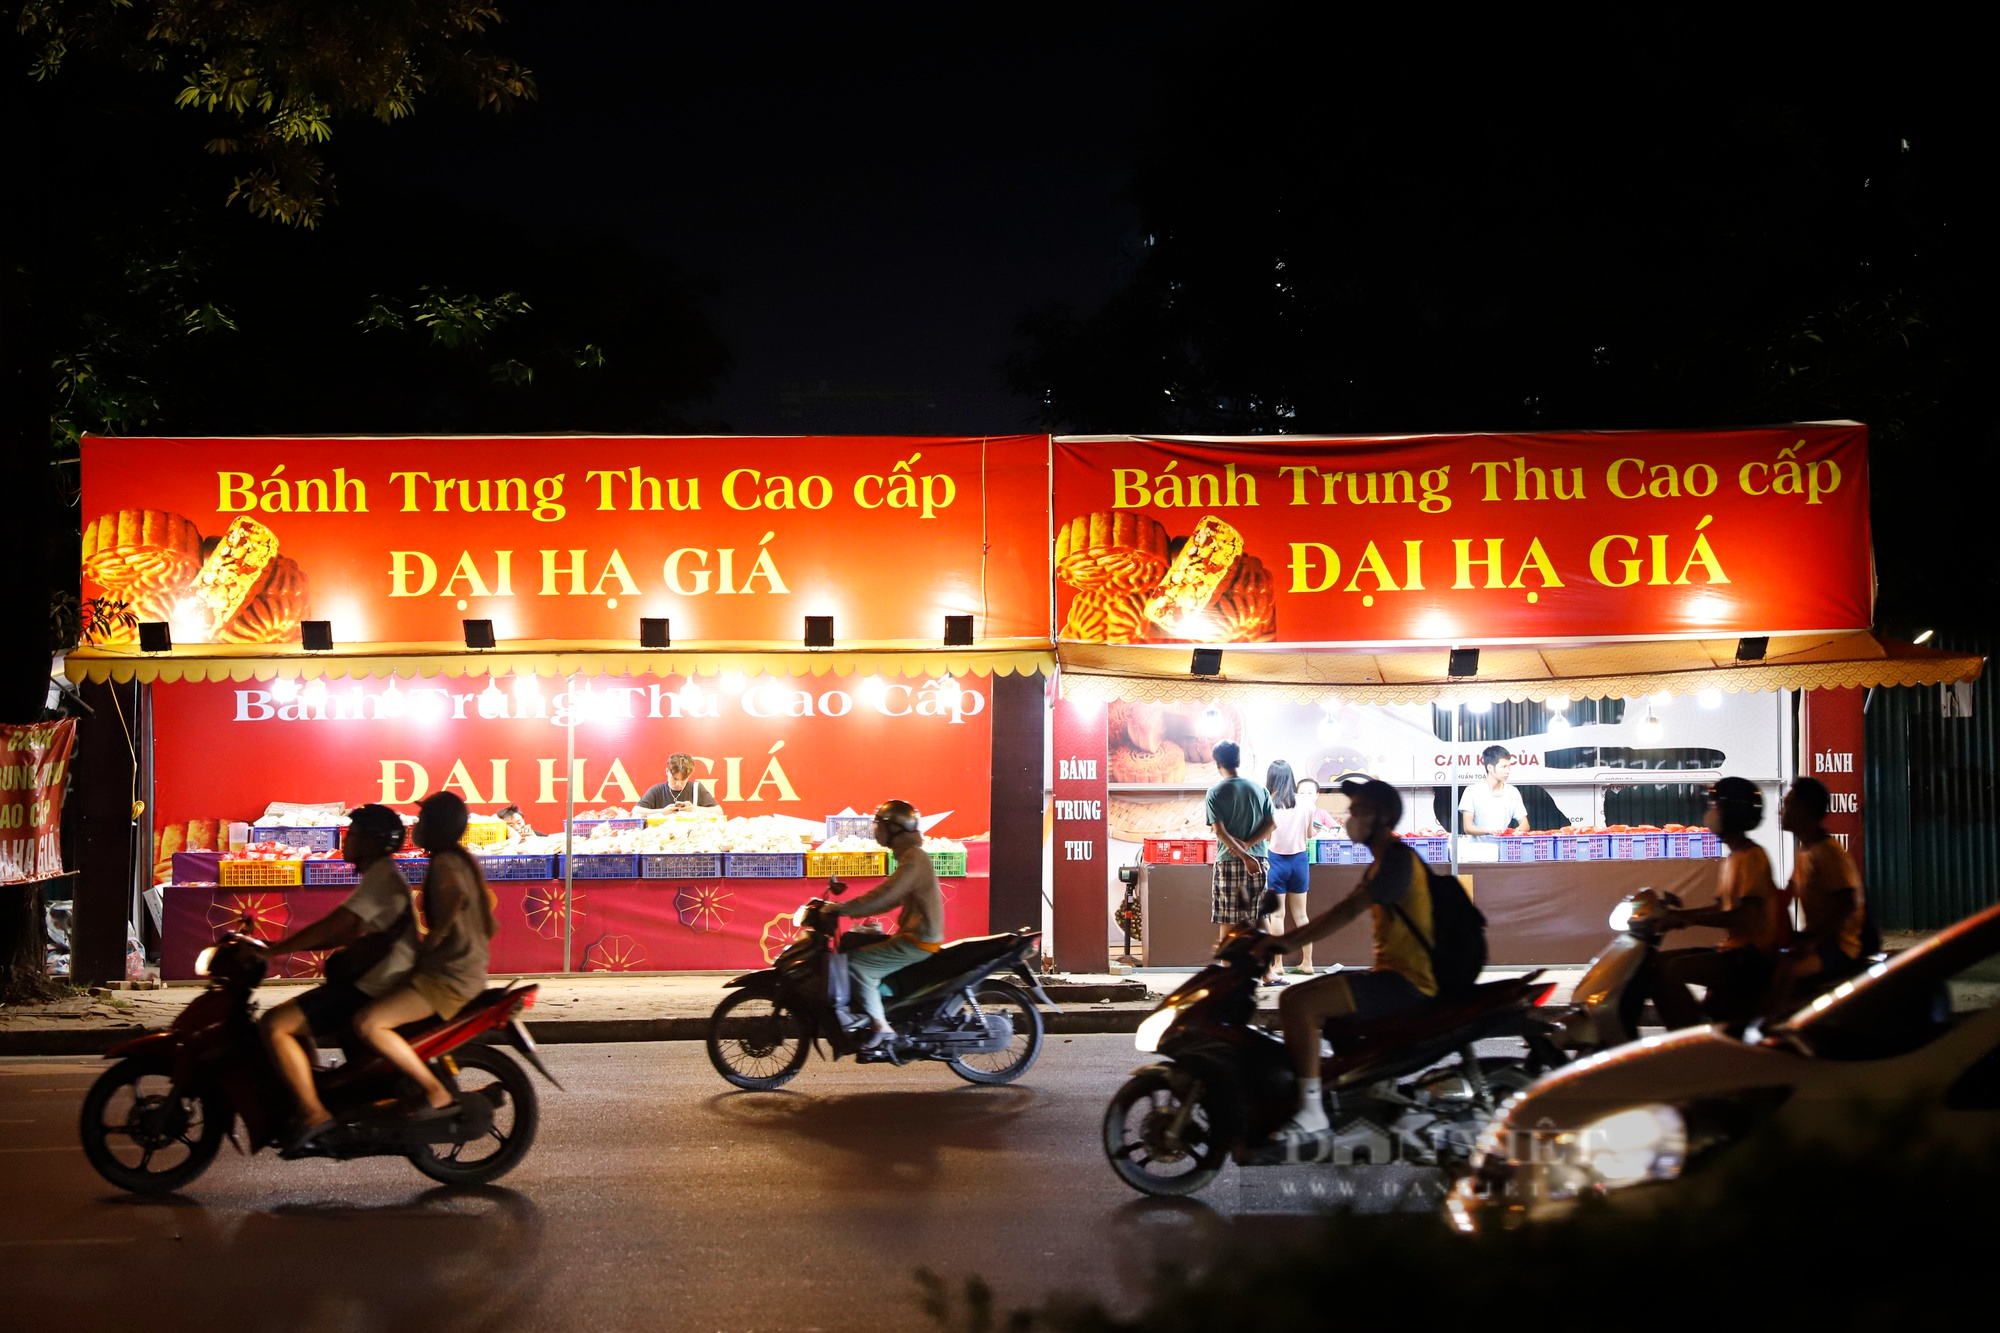 Bánh Trung thu đại hạ giá bán tràn lan vỉa hè Hà Nội với giá chỉ 25.000 đồng - Ảnh 1.